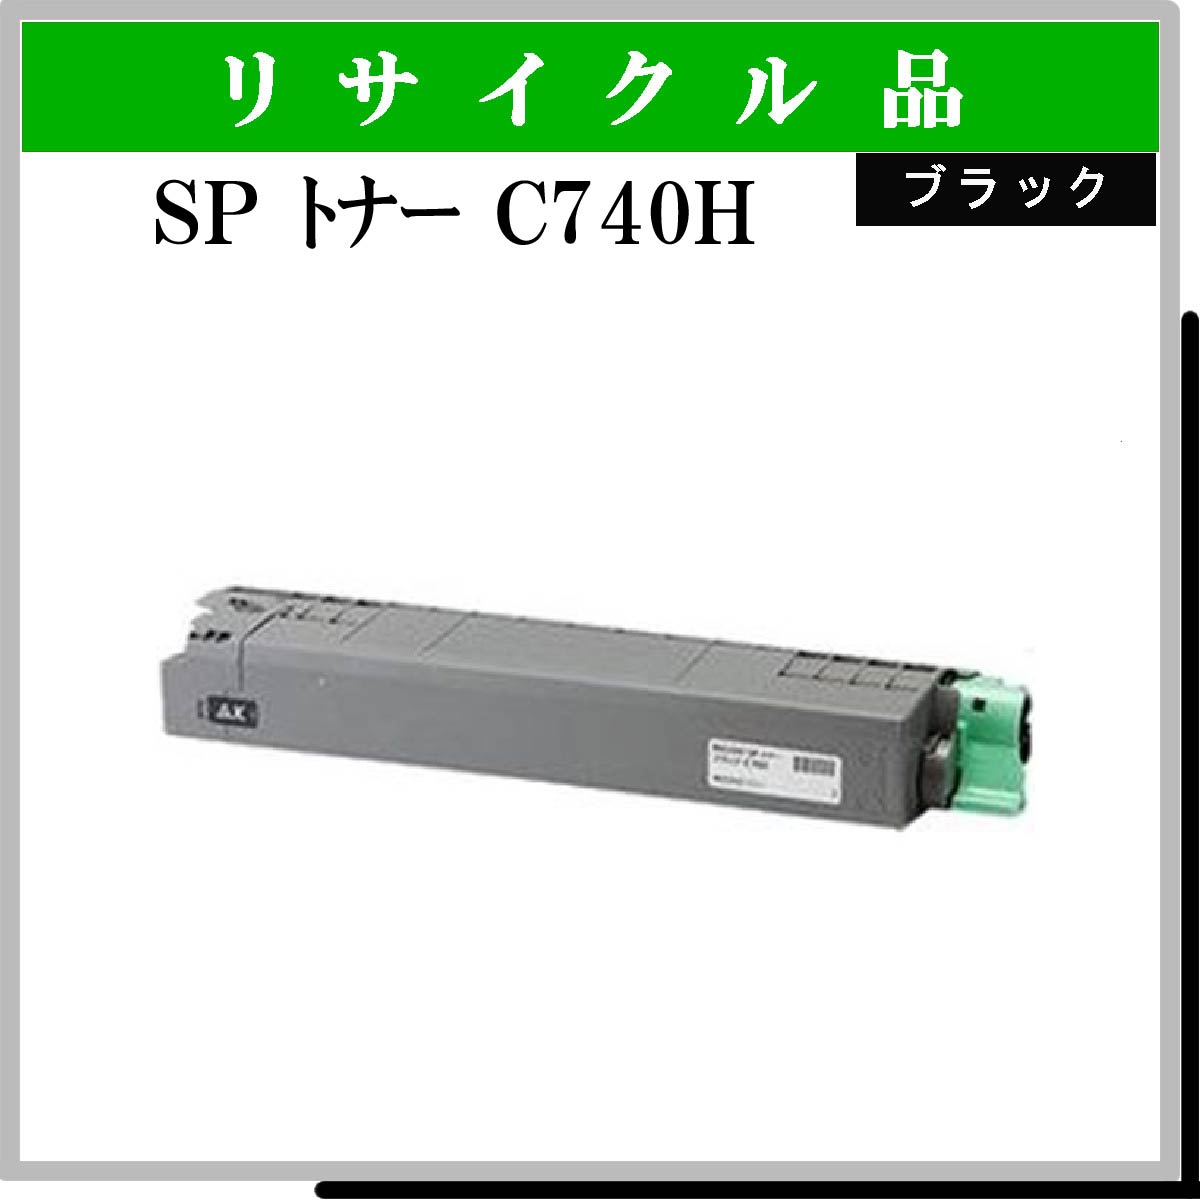 SP ﾄﾅｰ C740H ﾌﾞﾗｯｸ